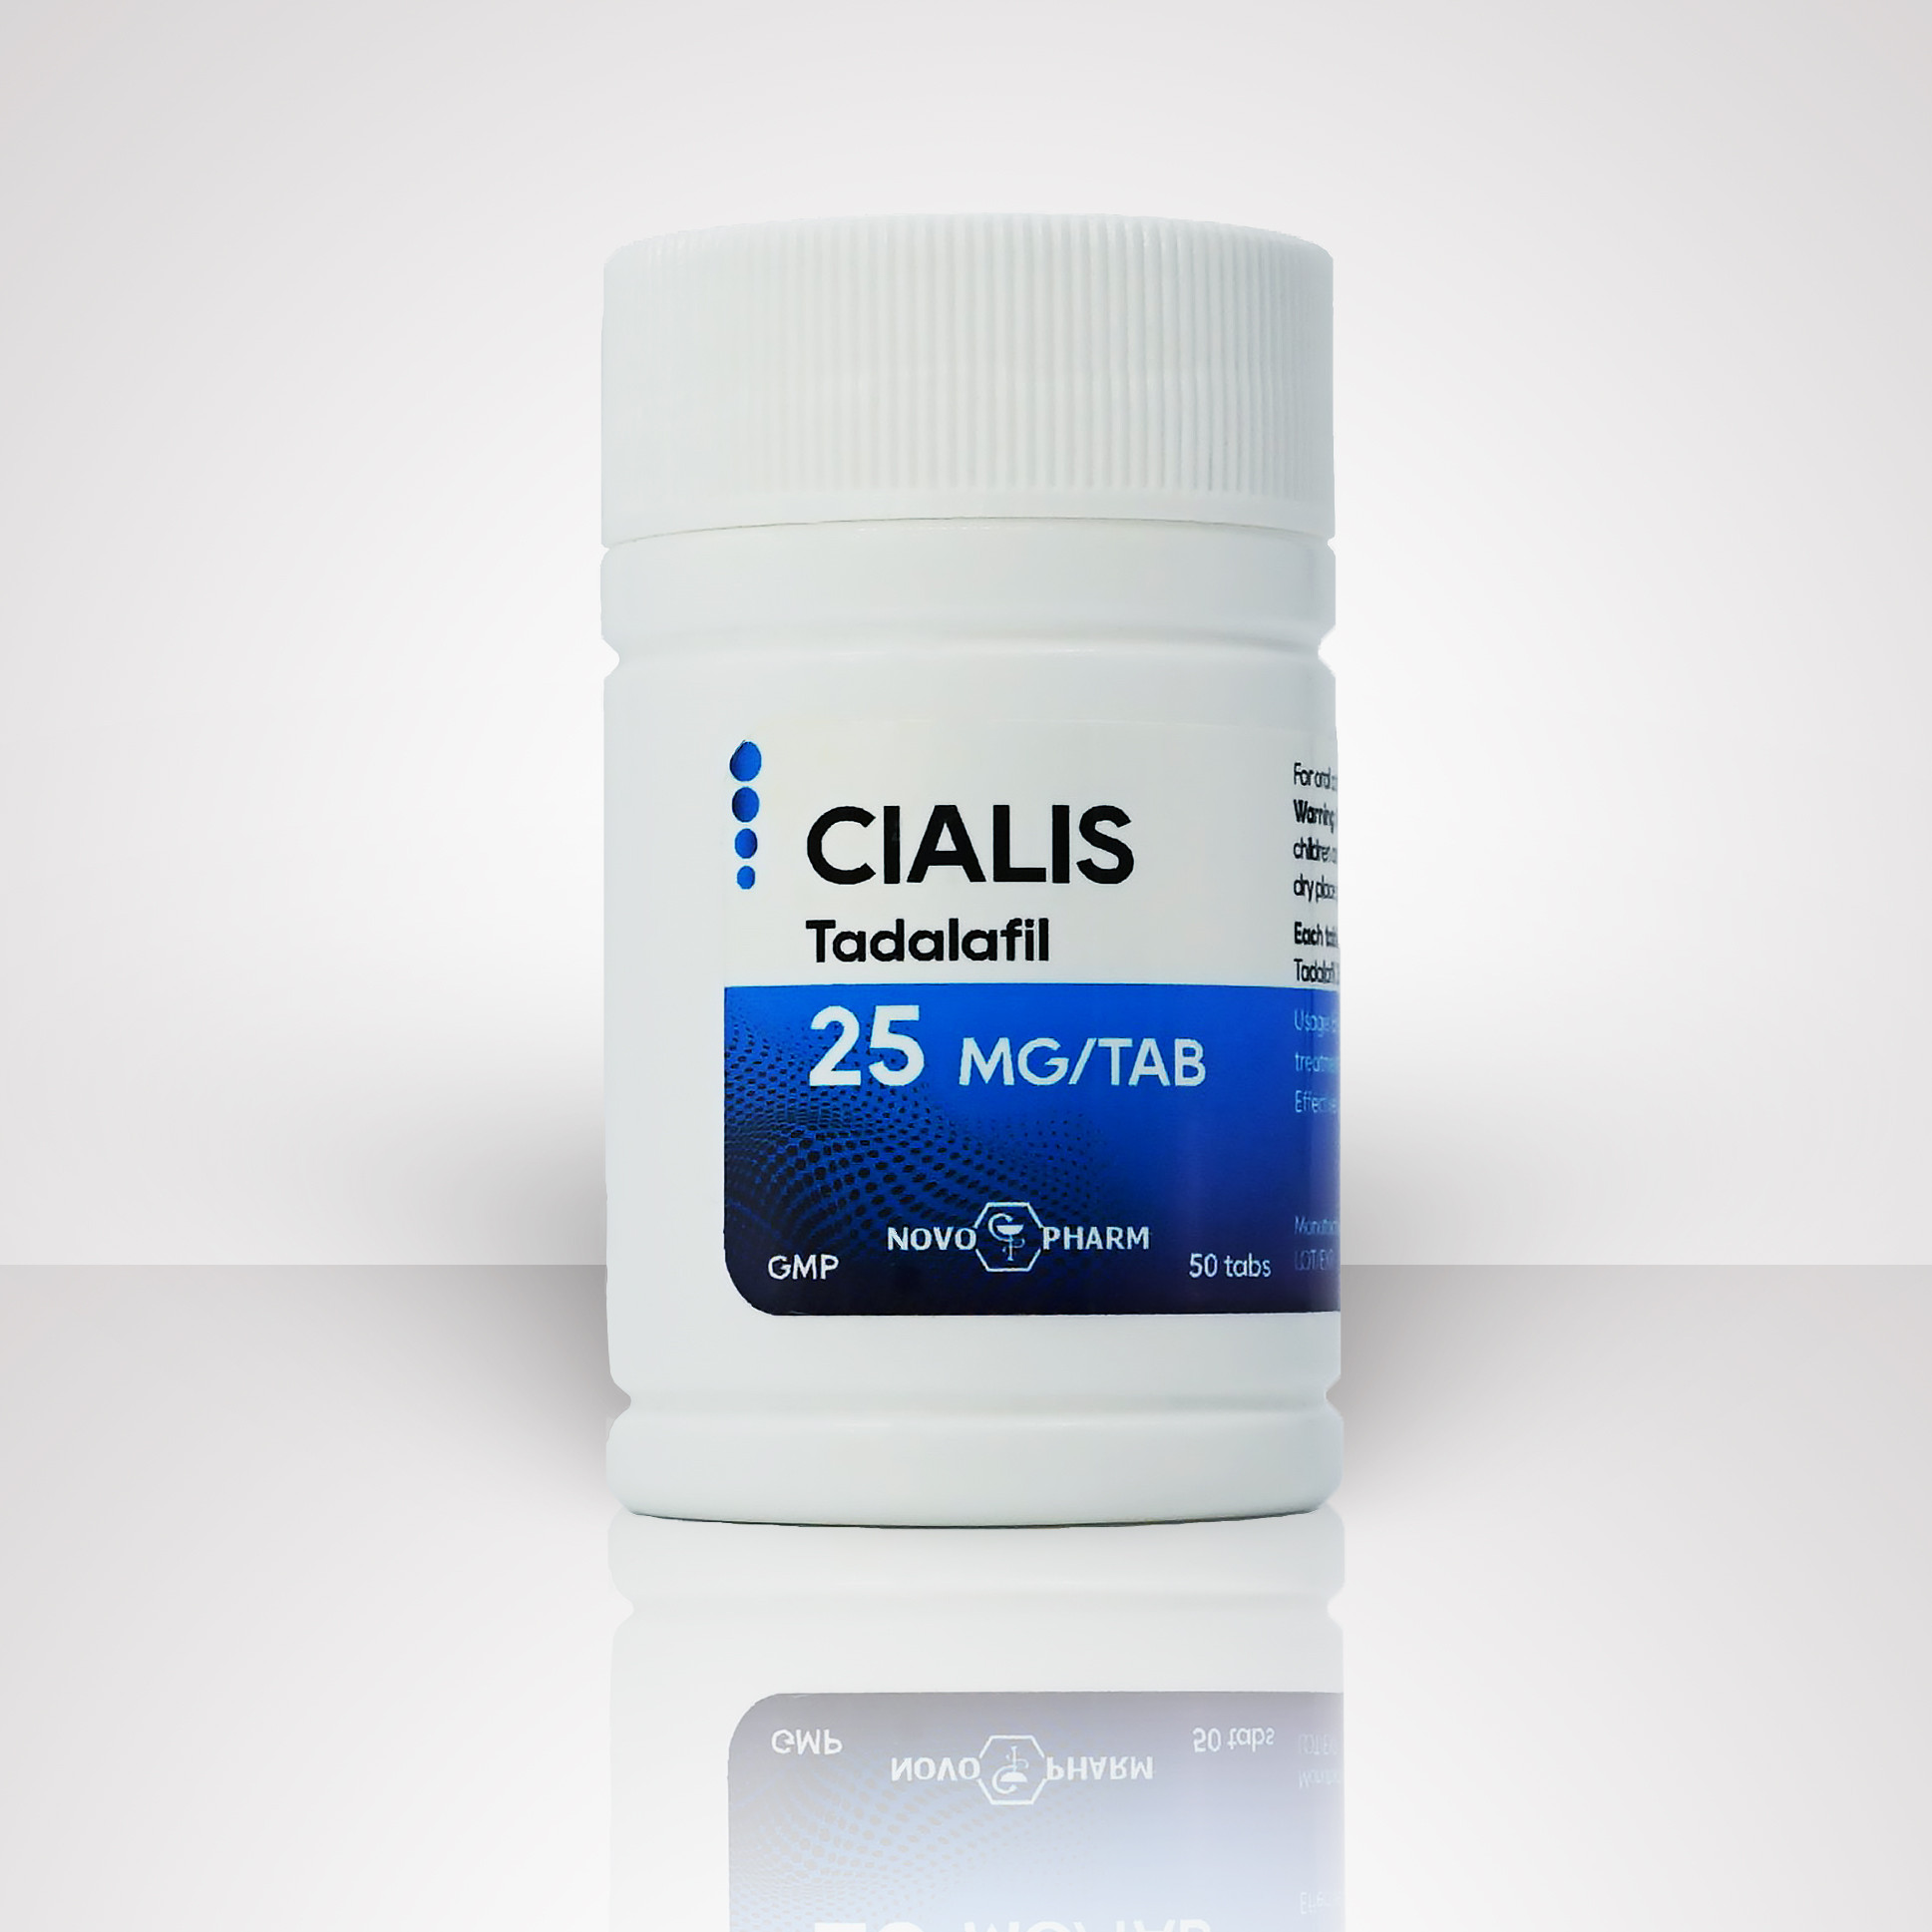 Buy Novo-Pharm Cialis - Tadalafil 25mg/50tabs | 60.000 Orders Shipped